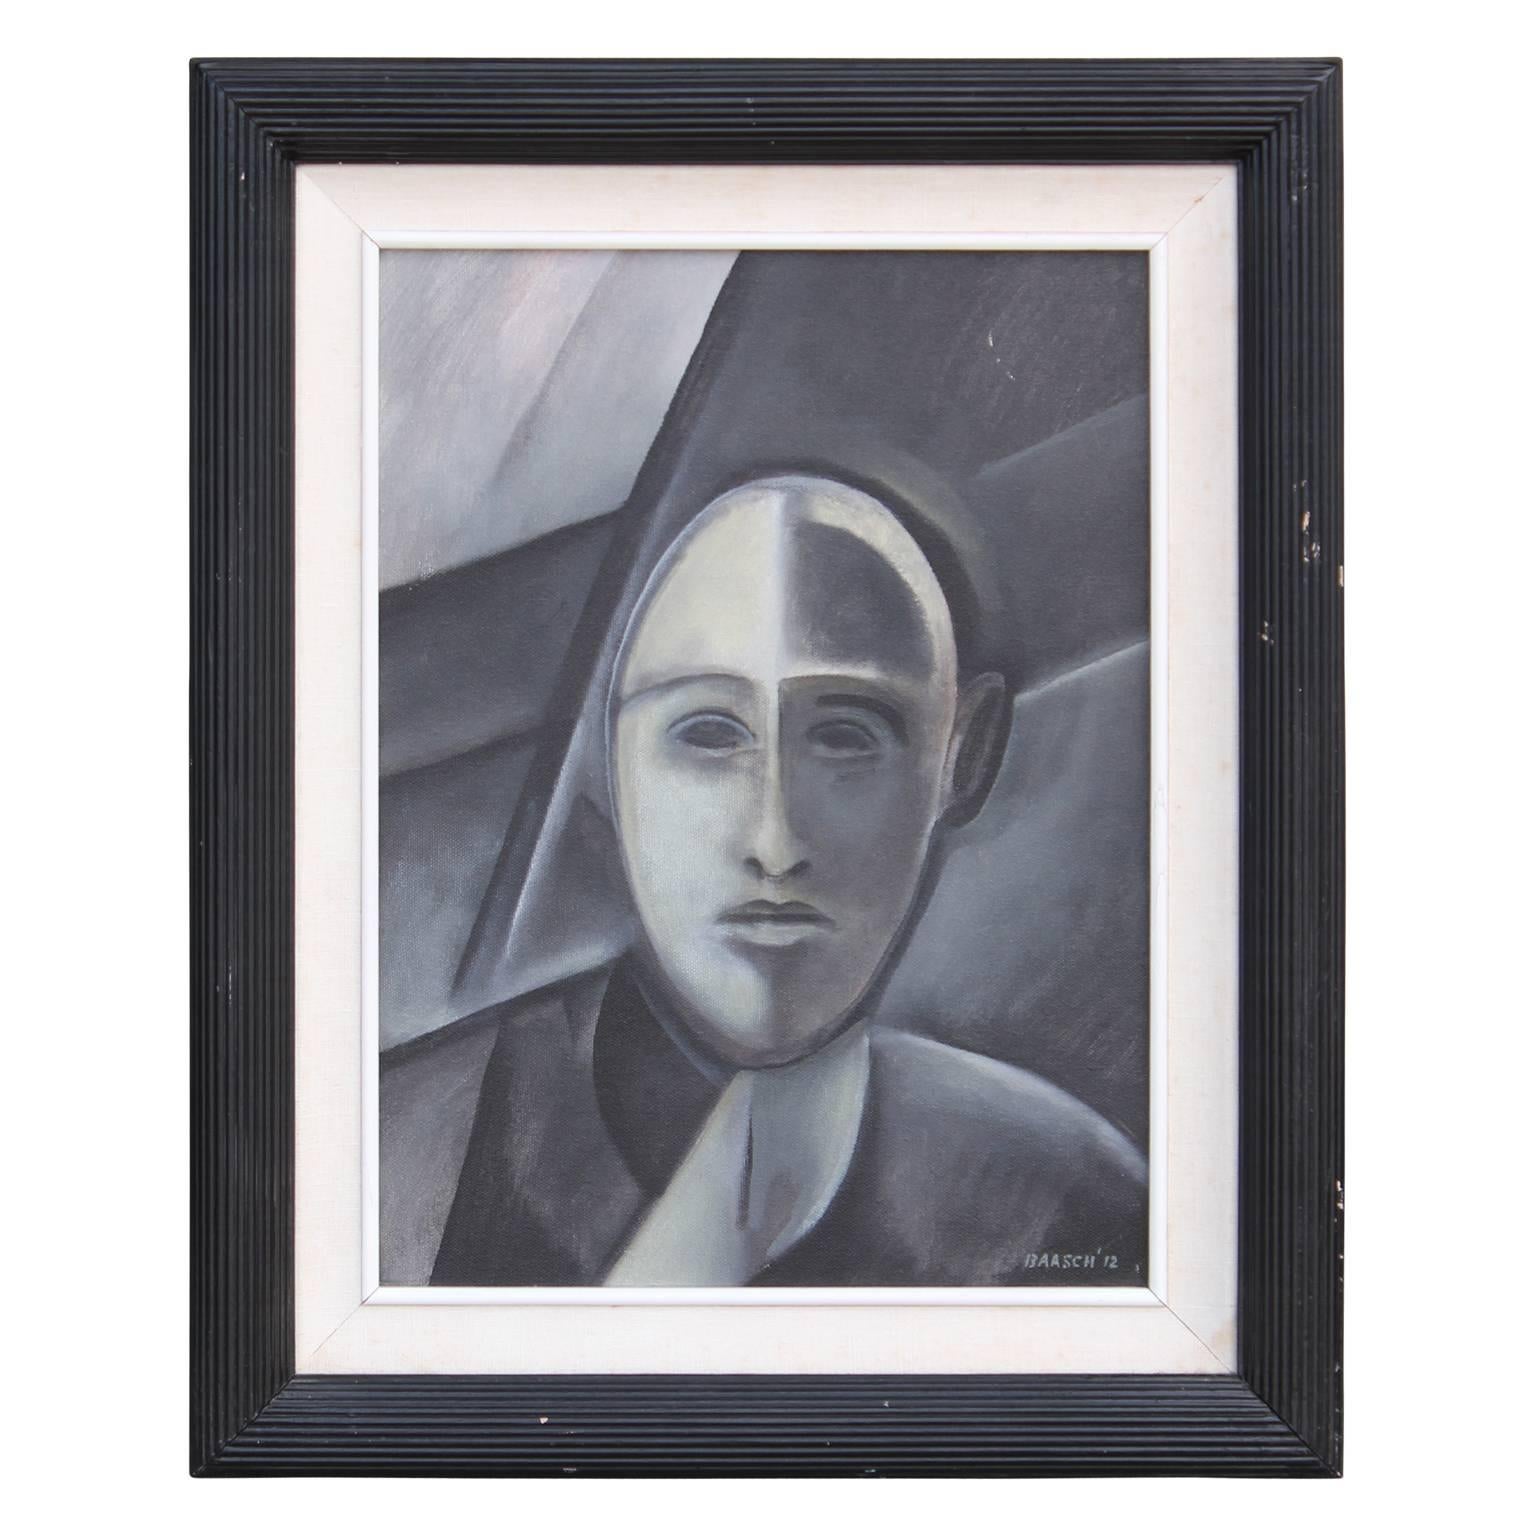 Norman Baasch Figurative Painting - "Portrait of a Man" Grey Cubist Portrait